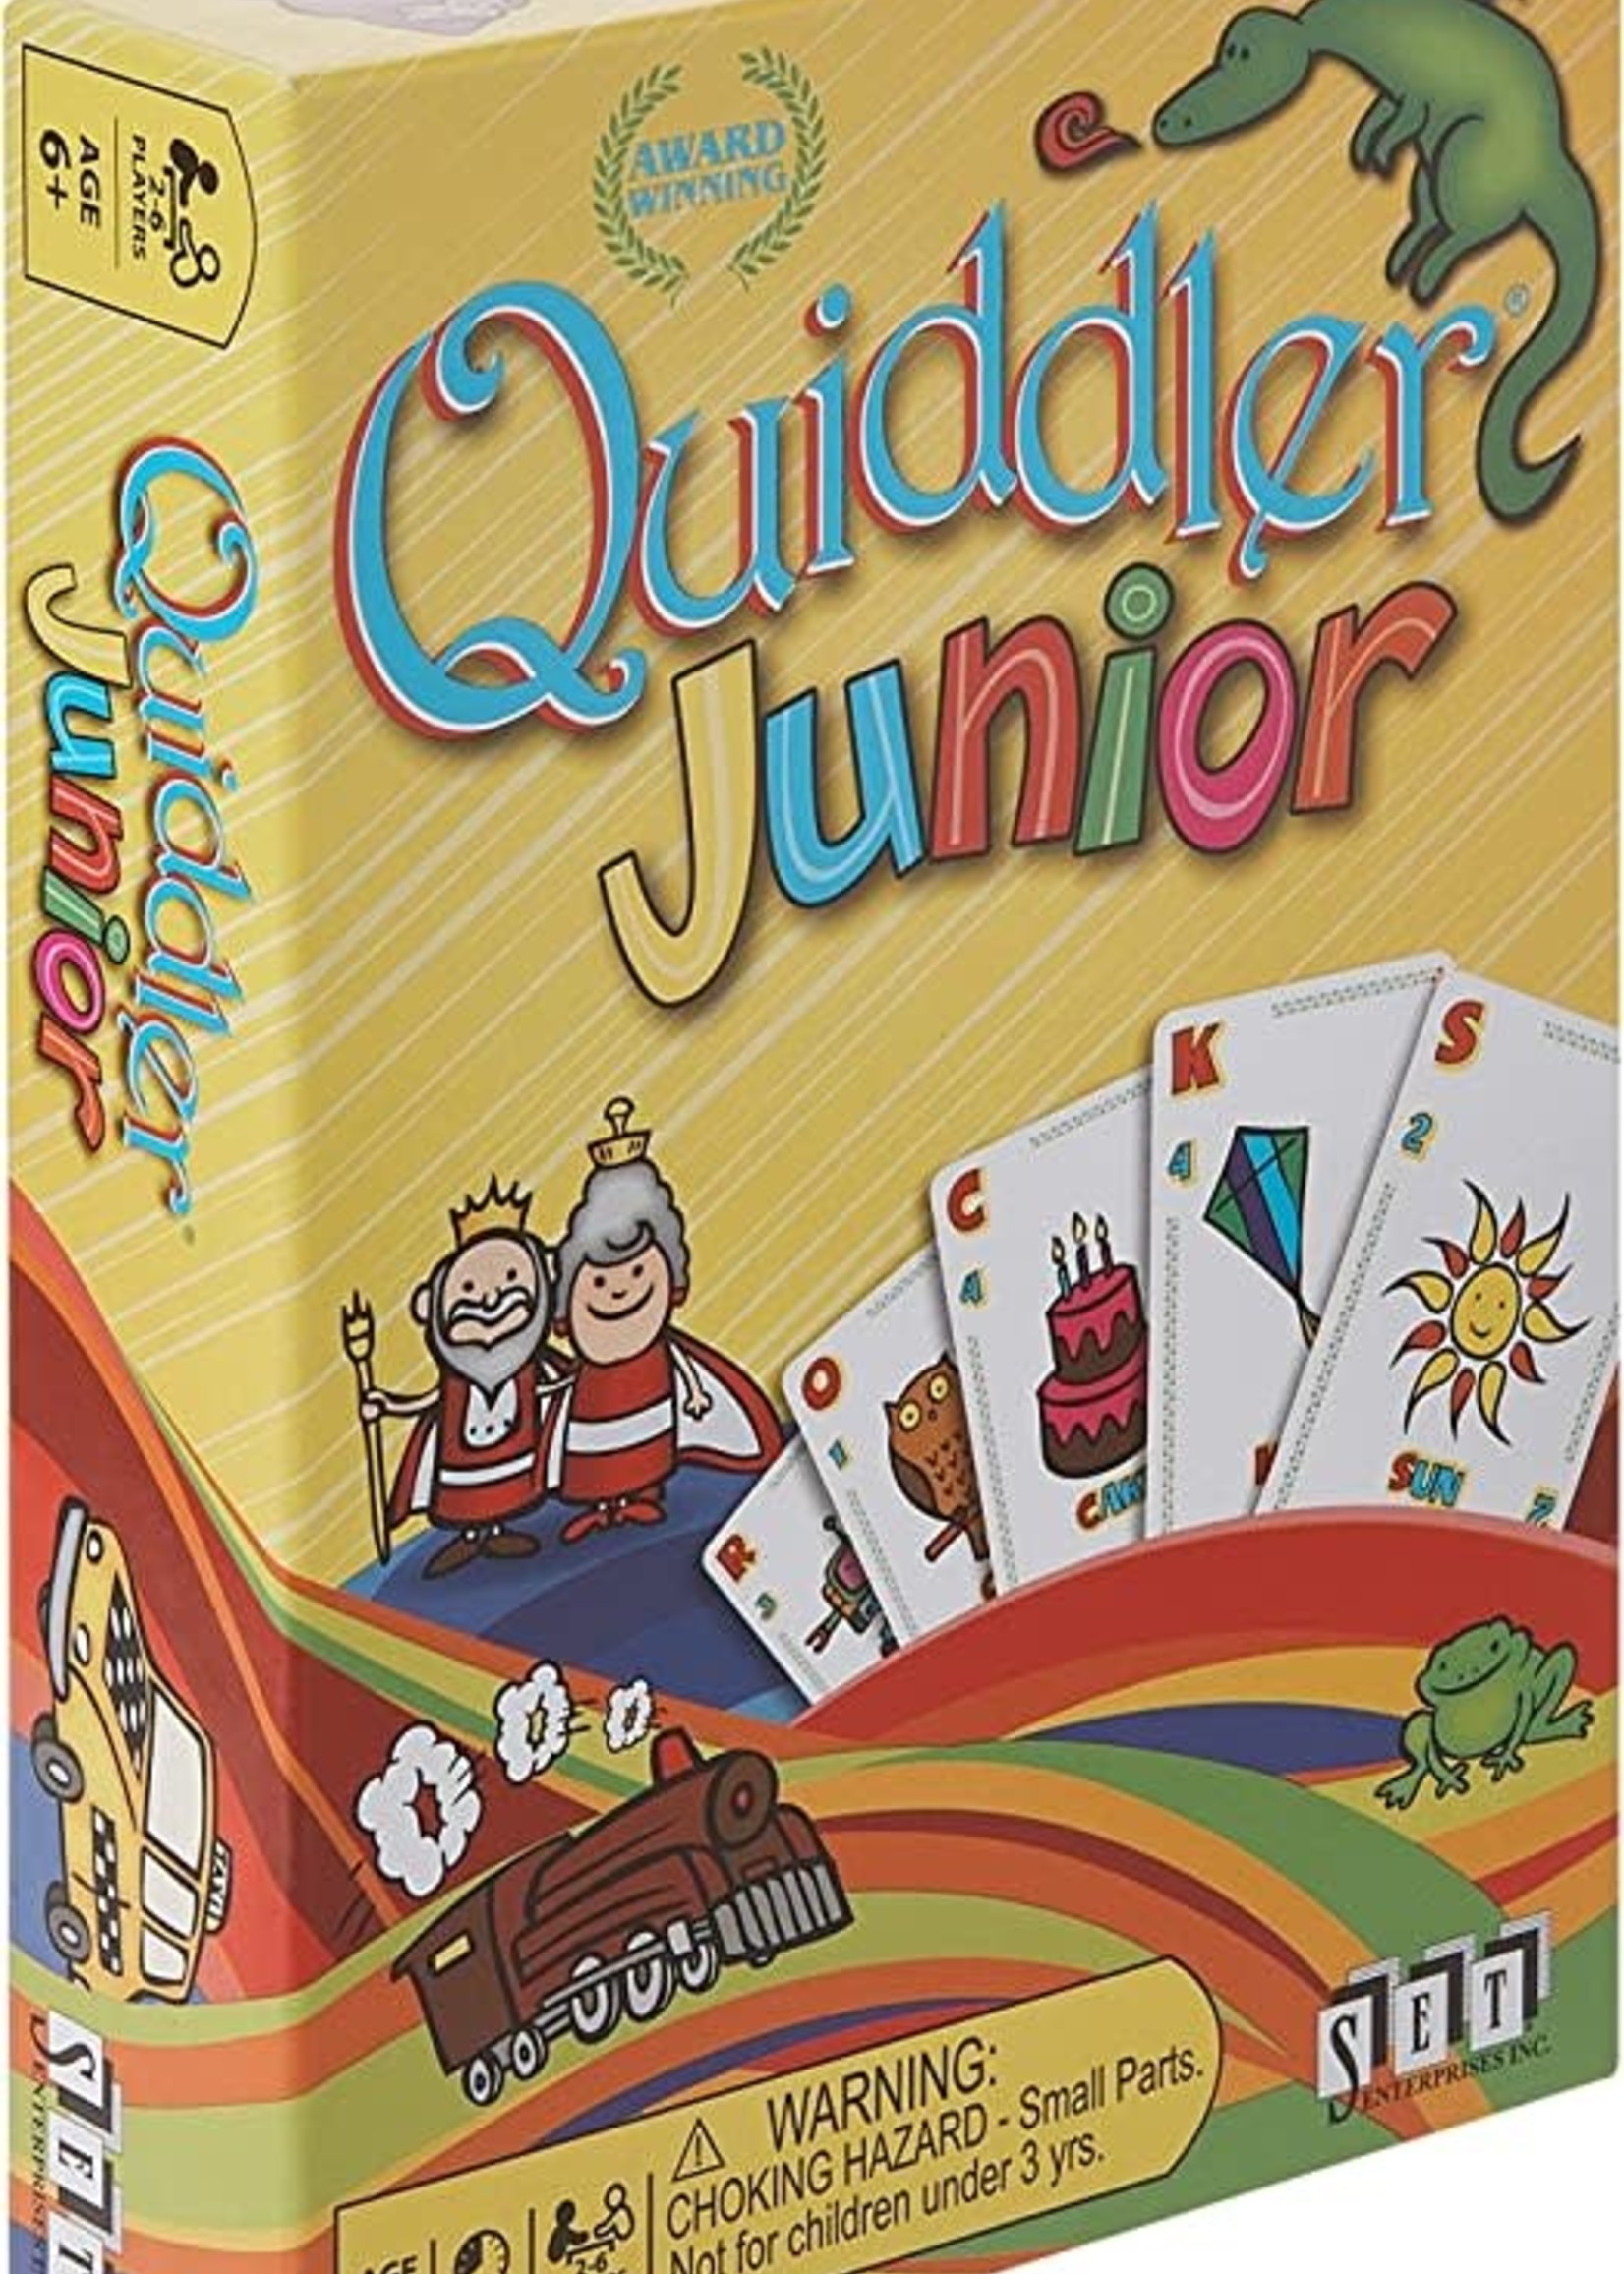 Quiddler junior